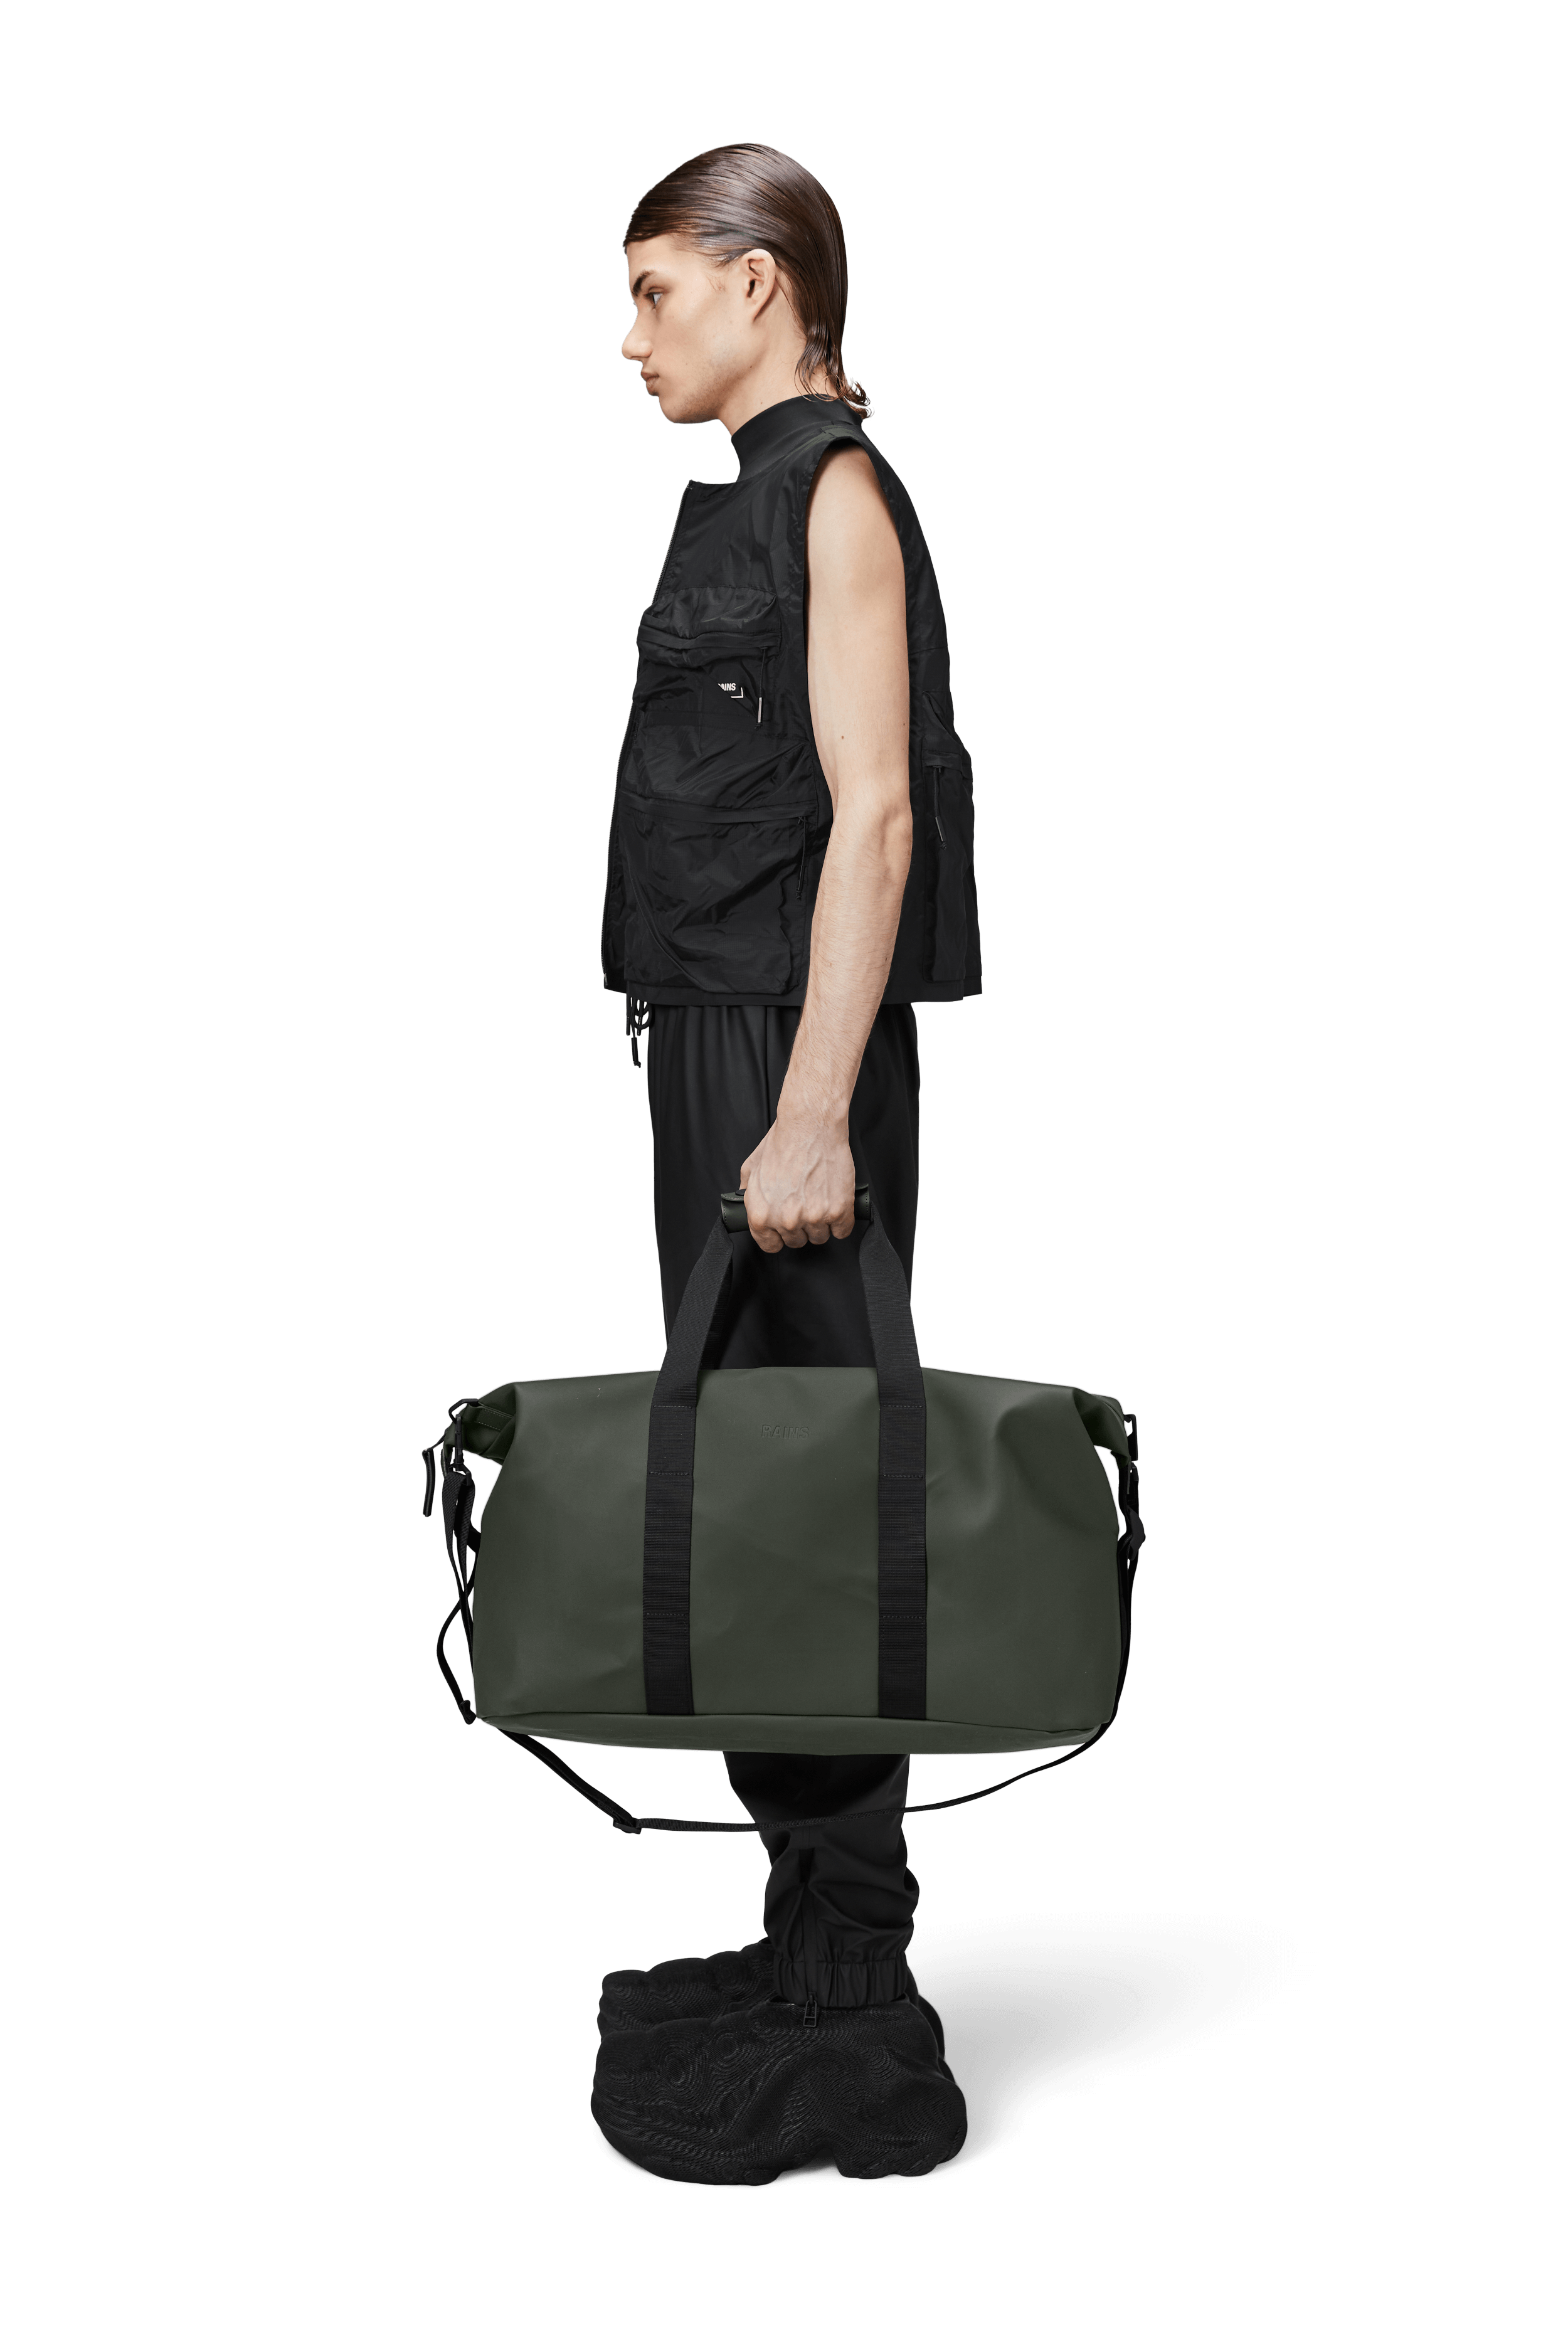 Hilo Weekend Bag | Green | Waterproof | by Rains - Lifestory